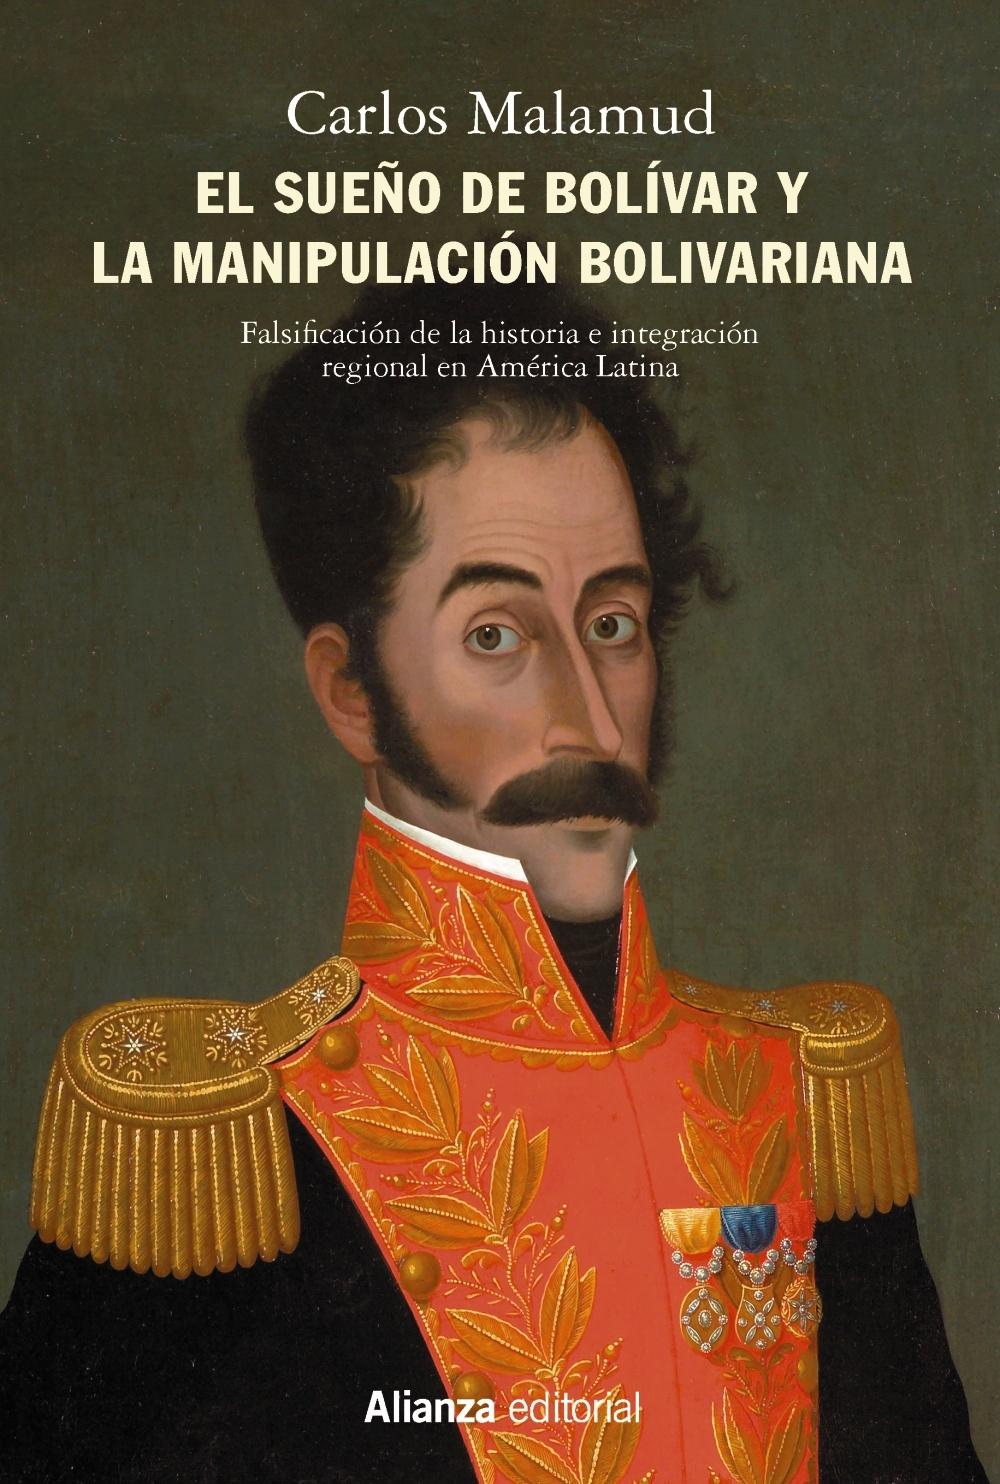 El sueño de Bolívar y la manipulación bolivariana "Falsificación de la historia e integración regional en América Latina". 